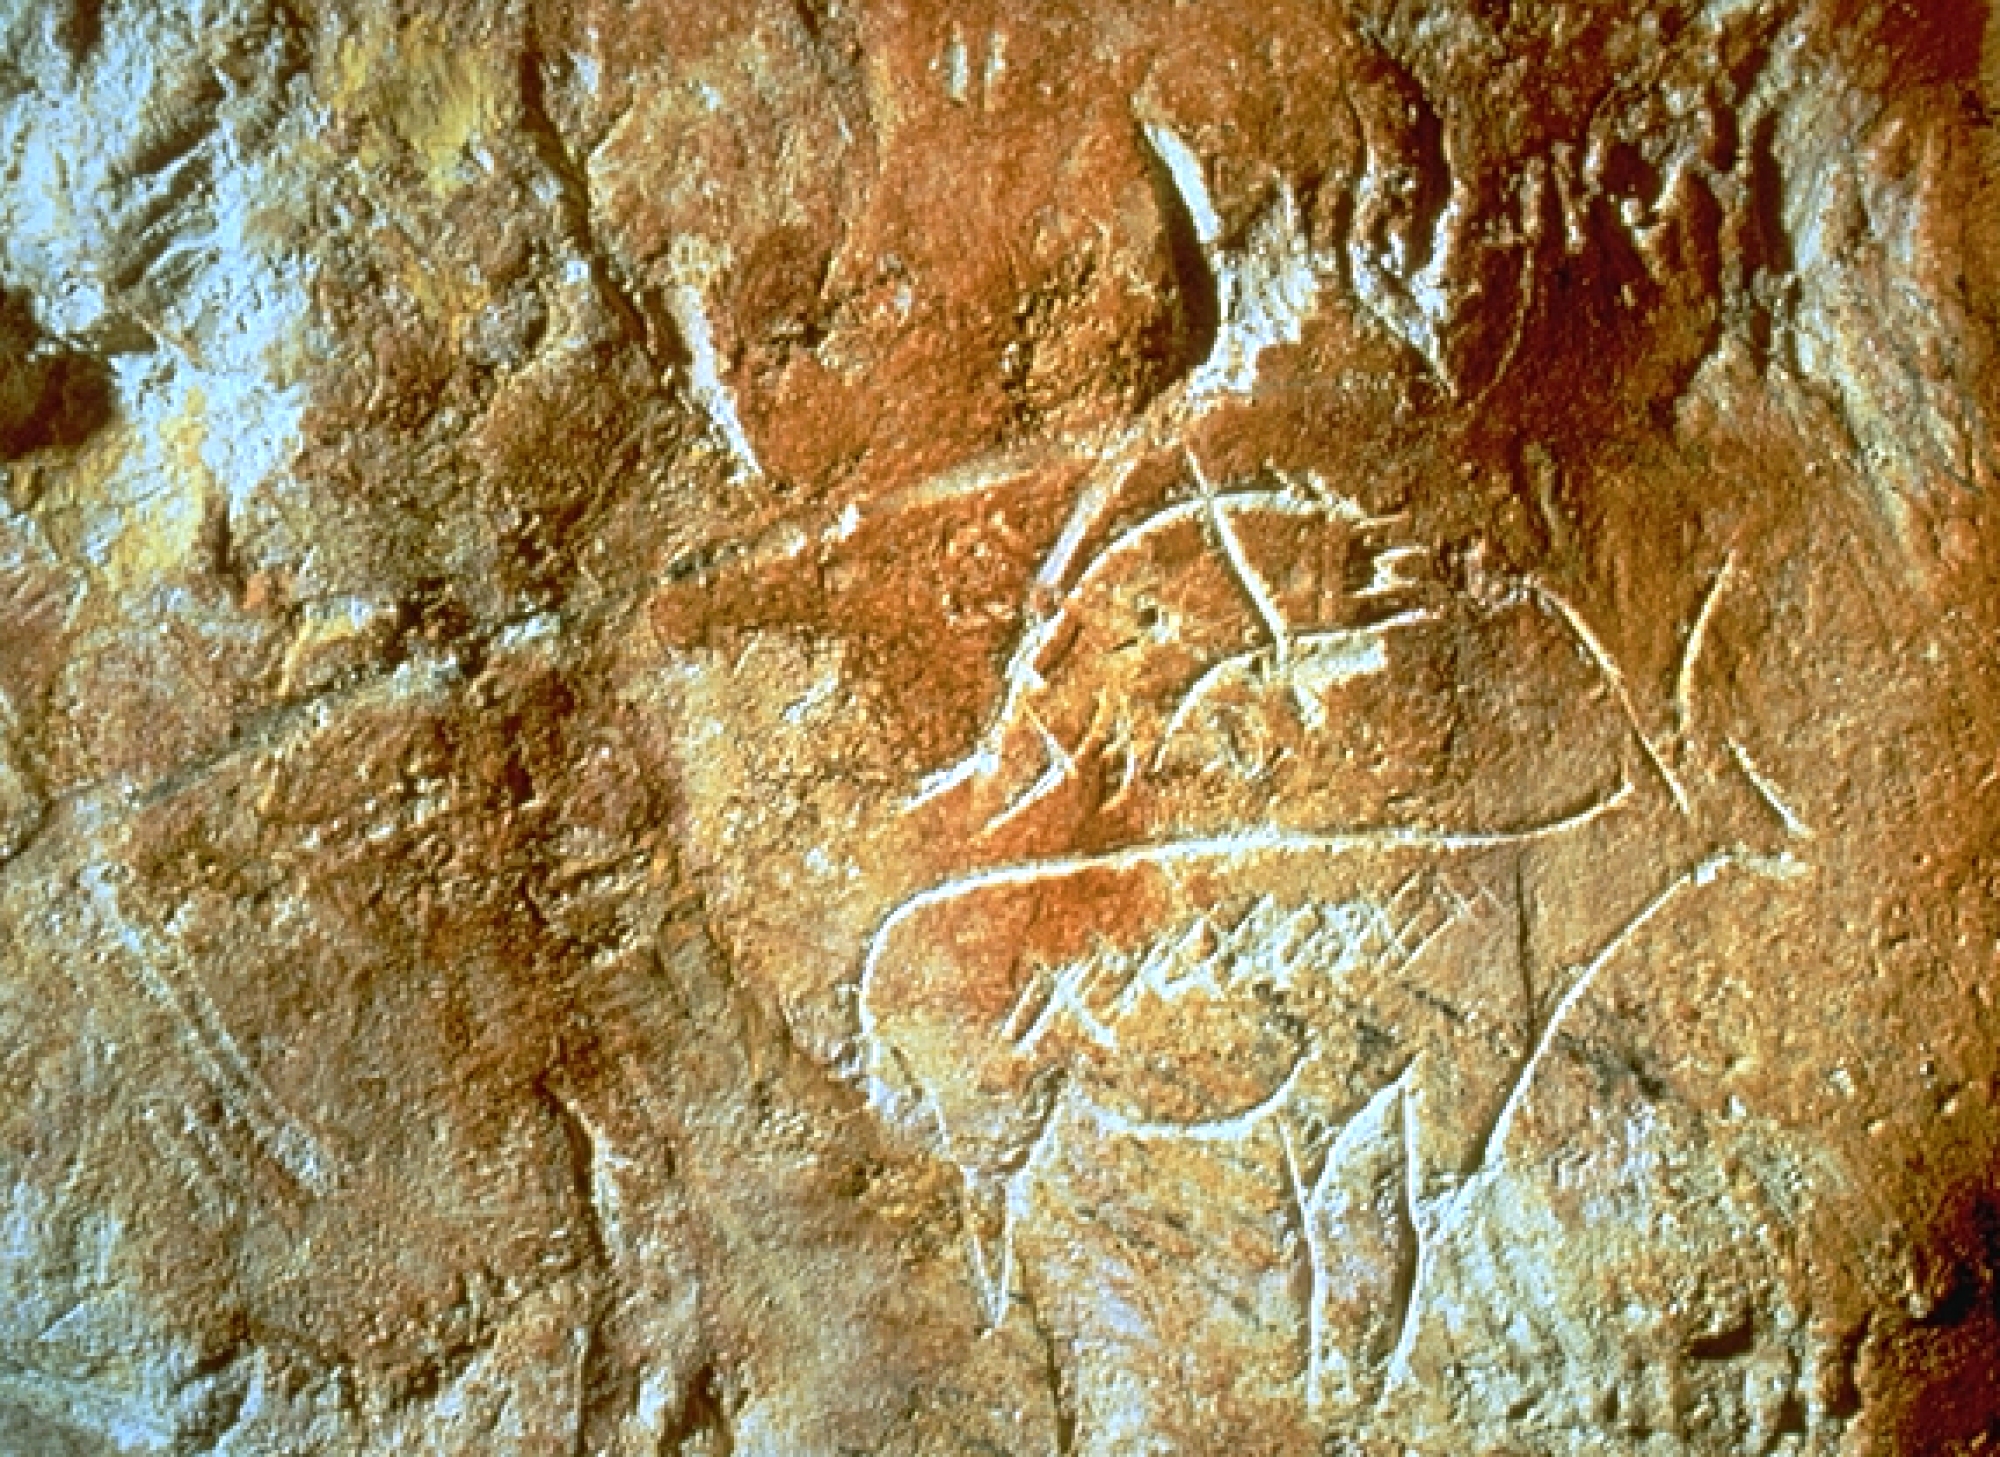 Tourisme culturel : Les Animaux Terrestres peints dans la grotte Cosquer